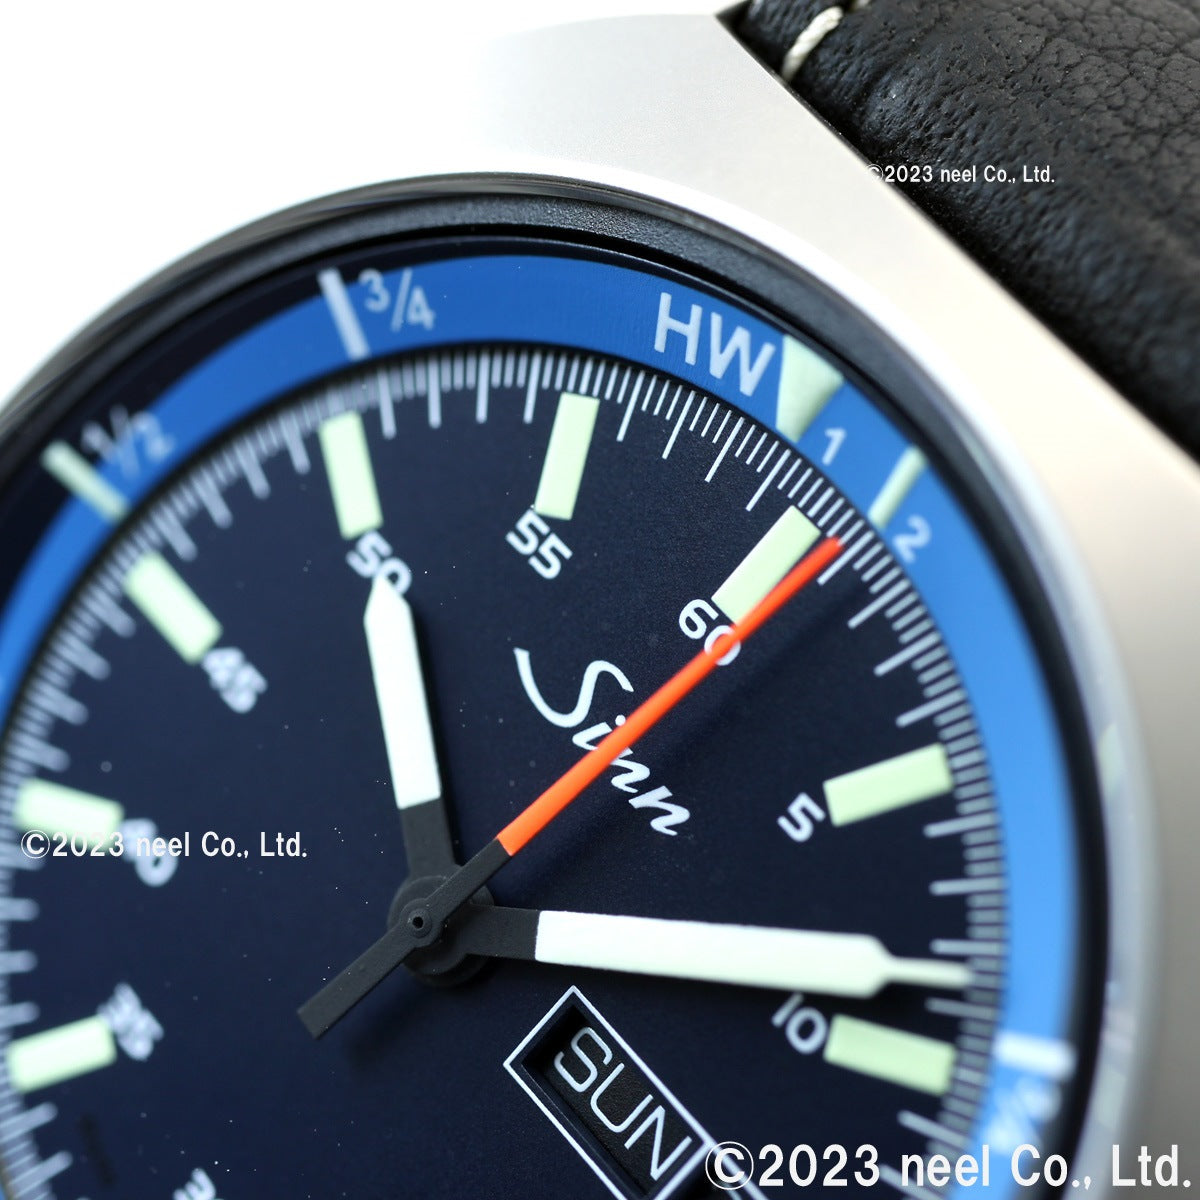 【60回分割手数料無料！】Sinn ジン 240.ST.GZ 自動巻き 腕時計 メンズ Instrument Watches インストゥルメント  ウォッチ インテグレーションカウレザーストラップ ドイツ製